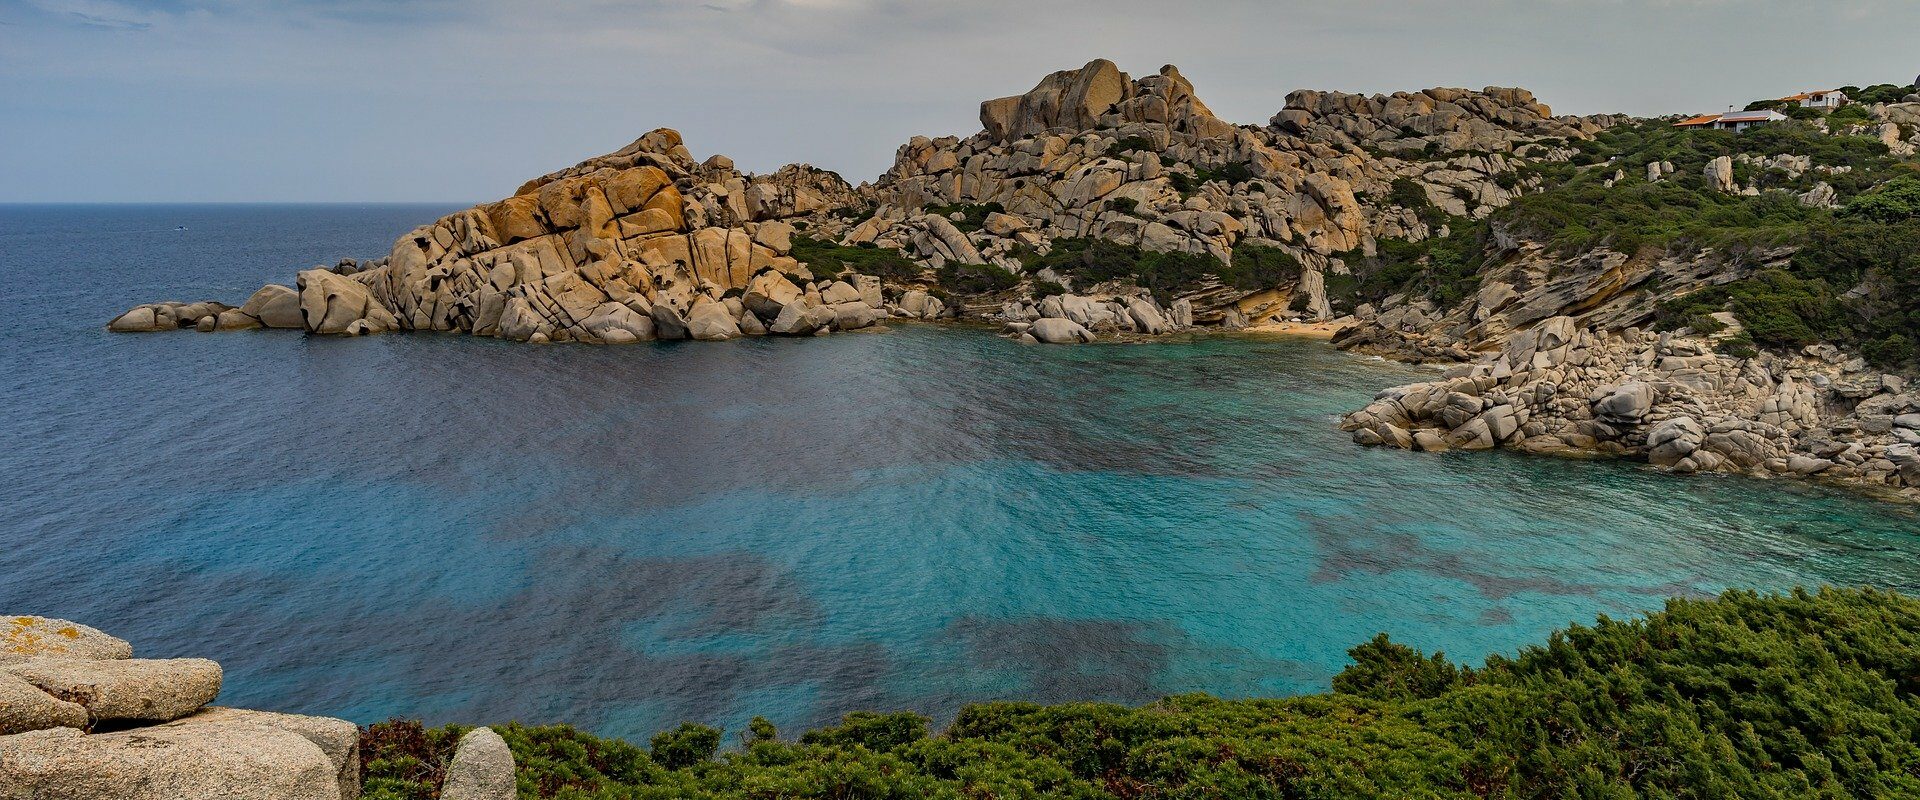 Les plus belles visites de Corse